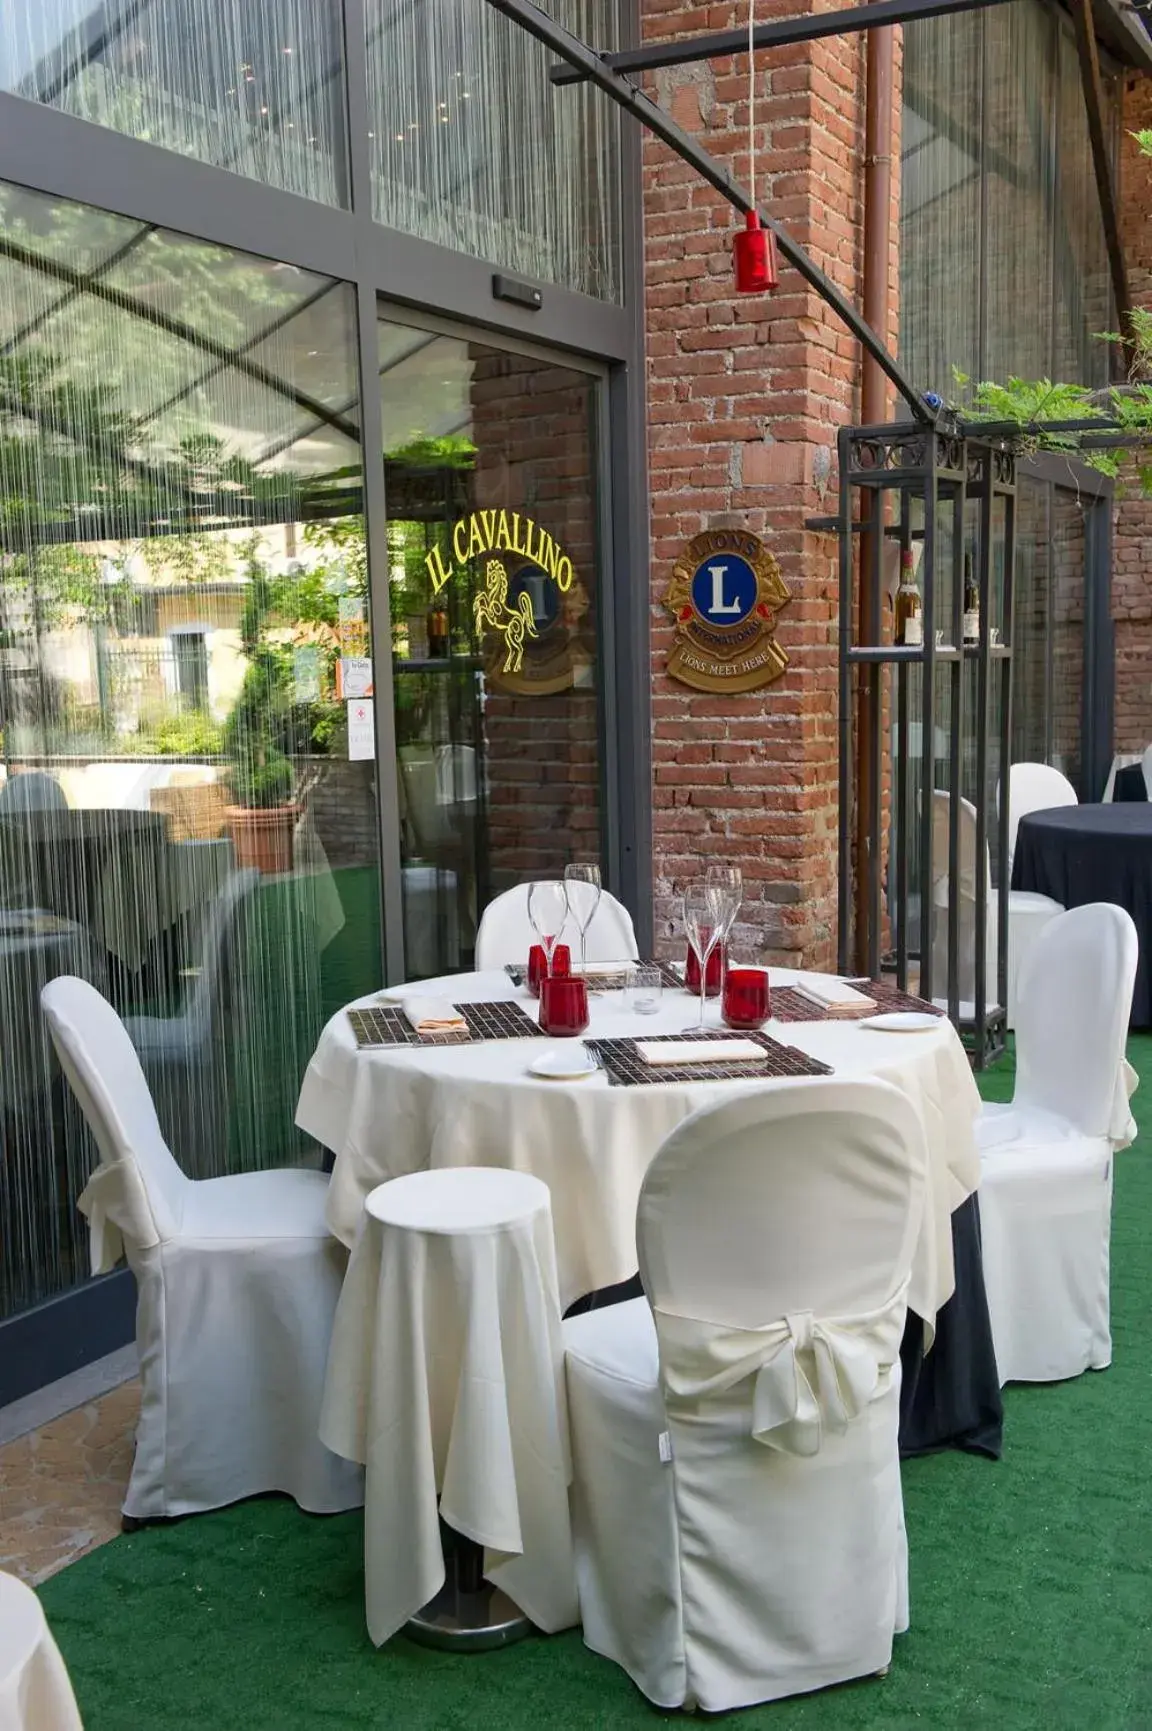 Restaurant/places to eat, Banquet Facilities in Albergo Cavallino